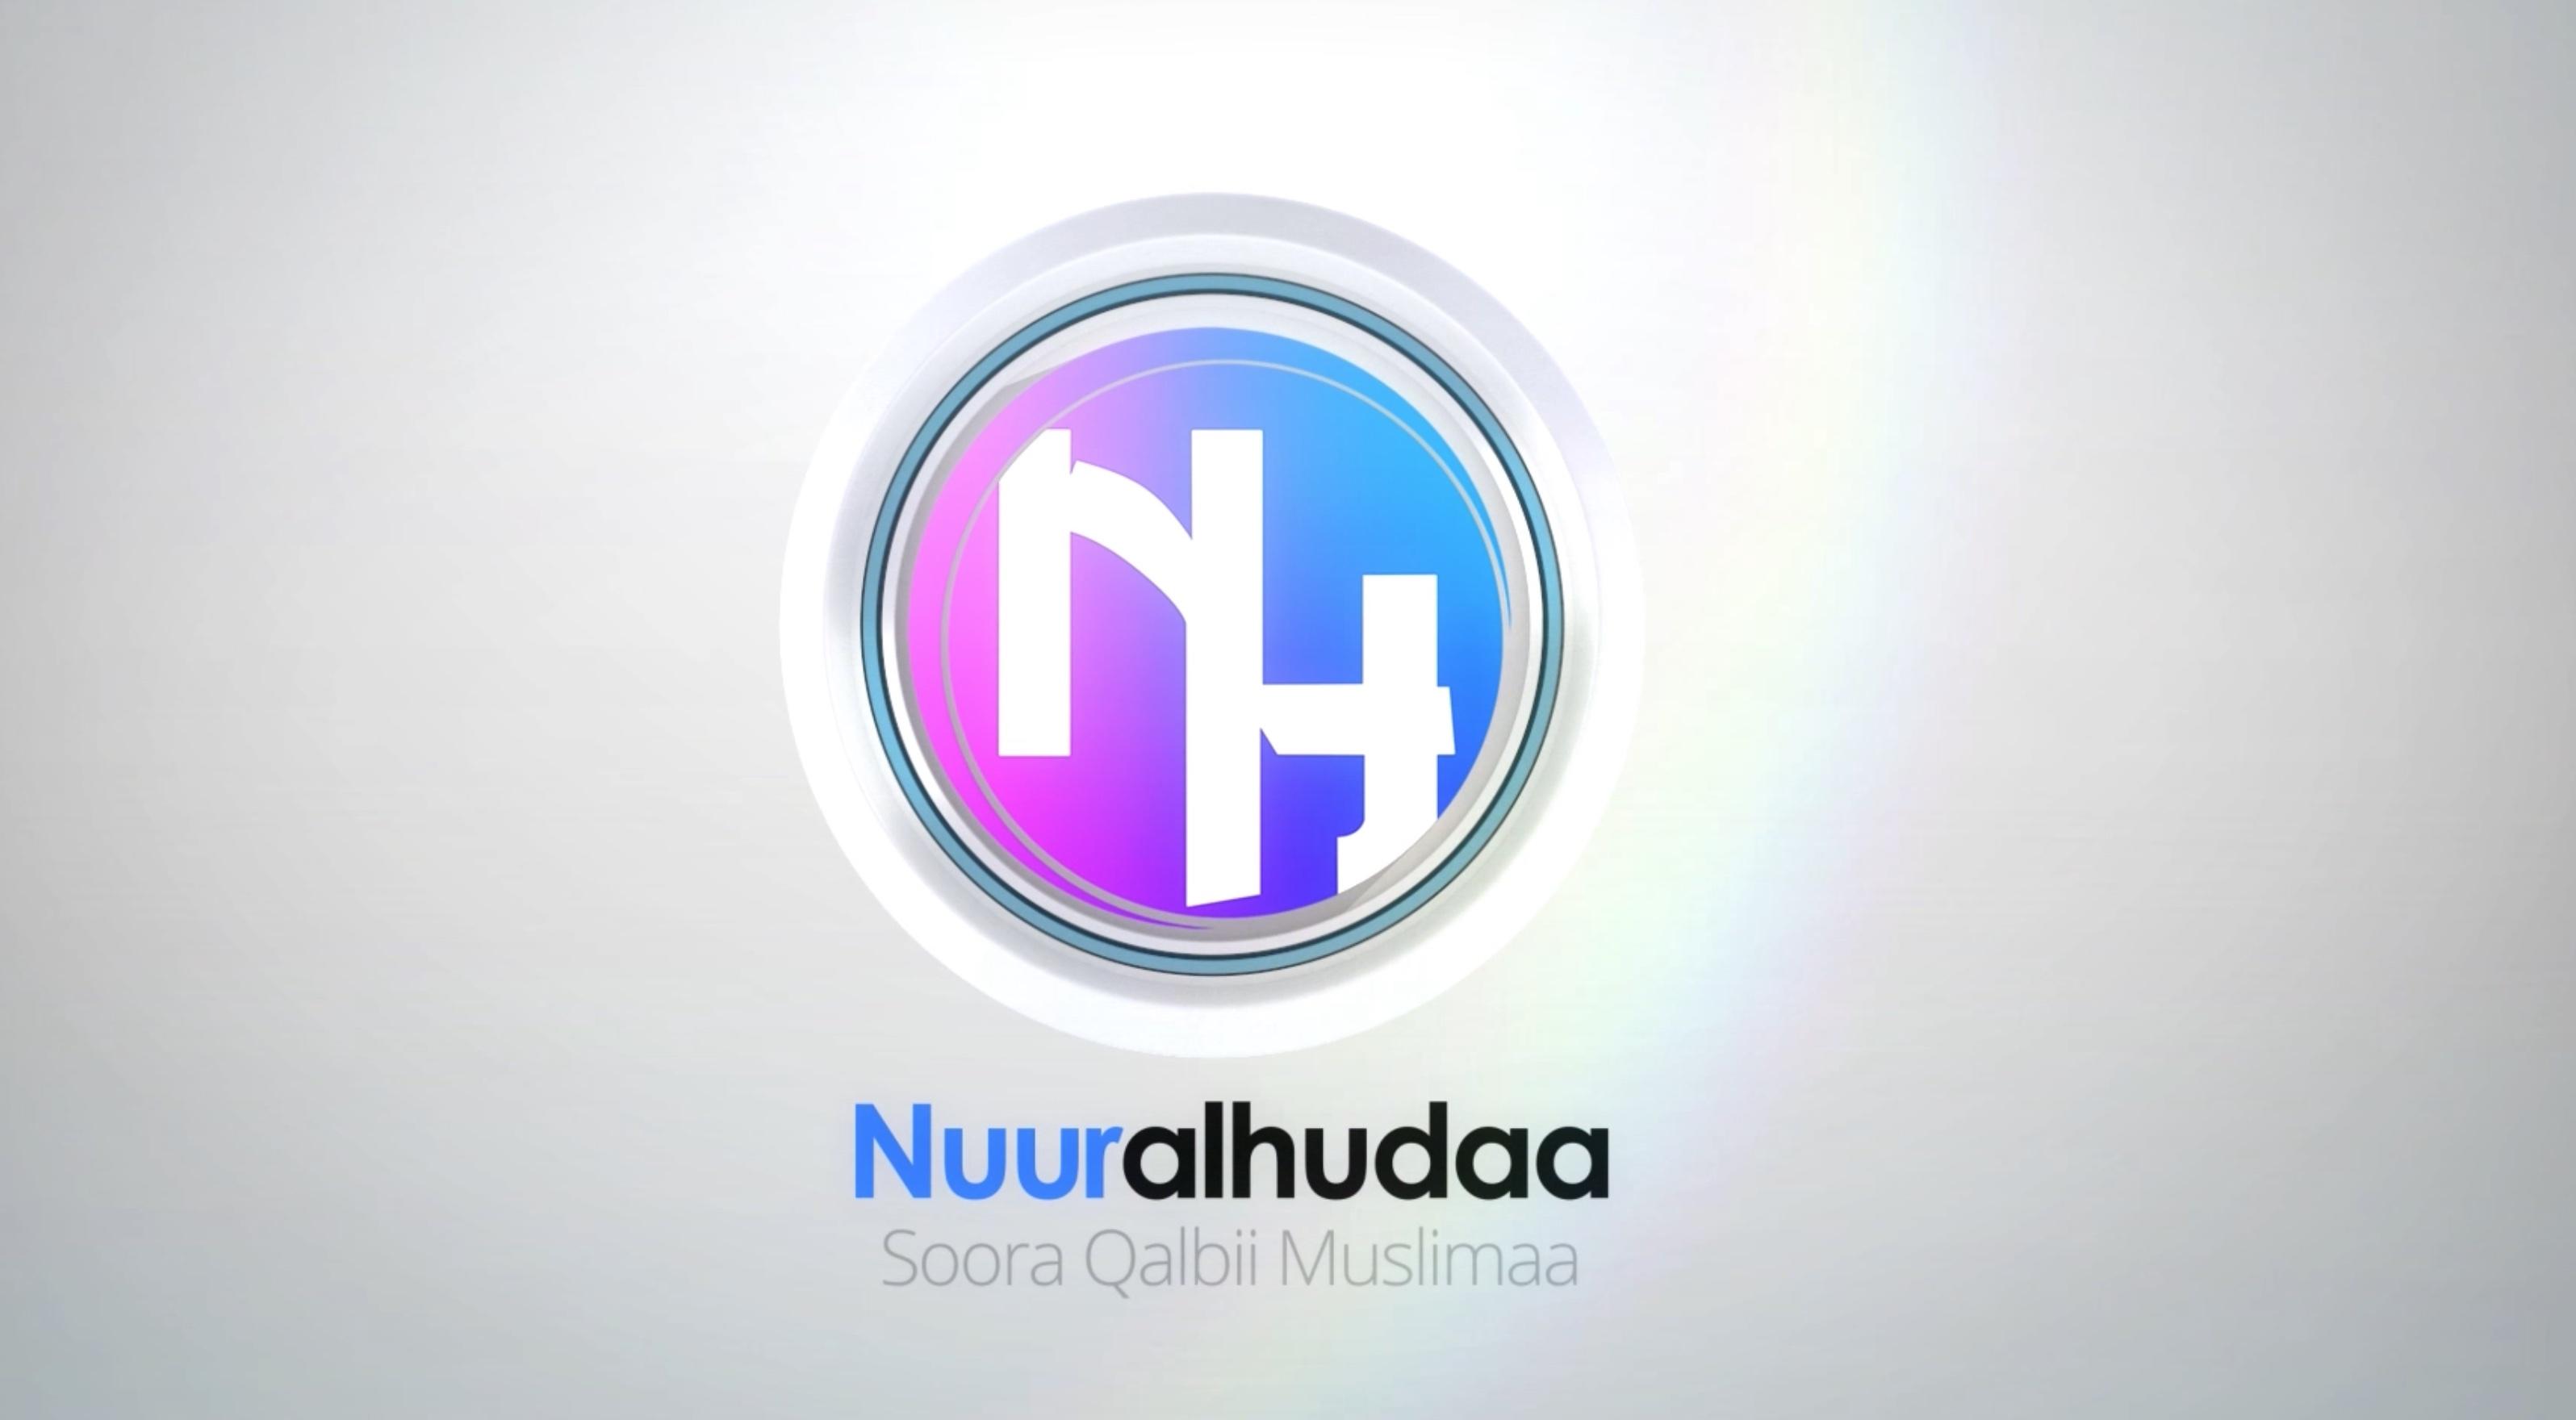 TV Nuuralhudaa LIVE Daawwadhaa